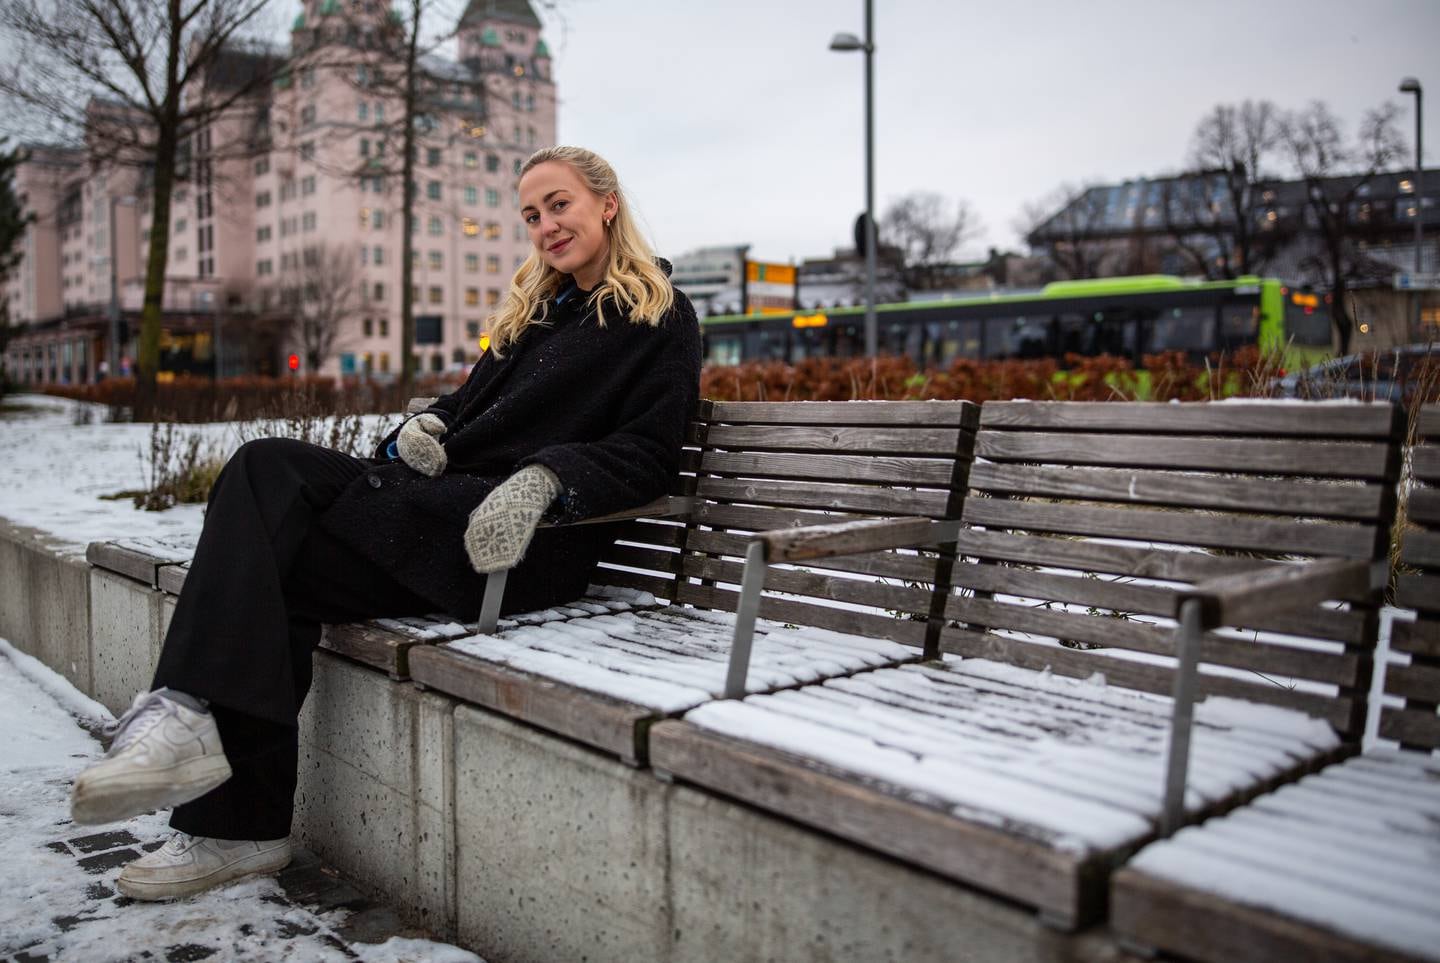 Ernæringskonsulent Lise Sofie Nøss (24) har skrevet boka «Cravings», en selvhjelpsbok for nordmenn som vil få kontroll på matsuget.